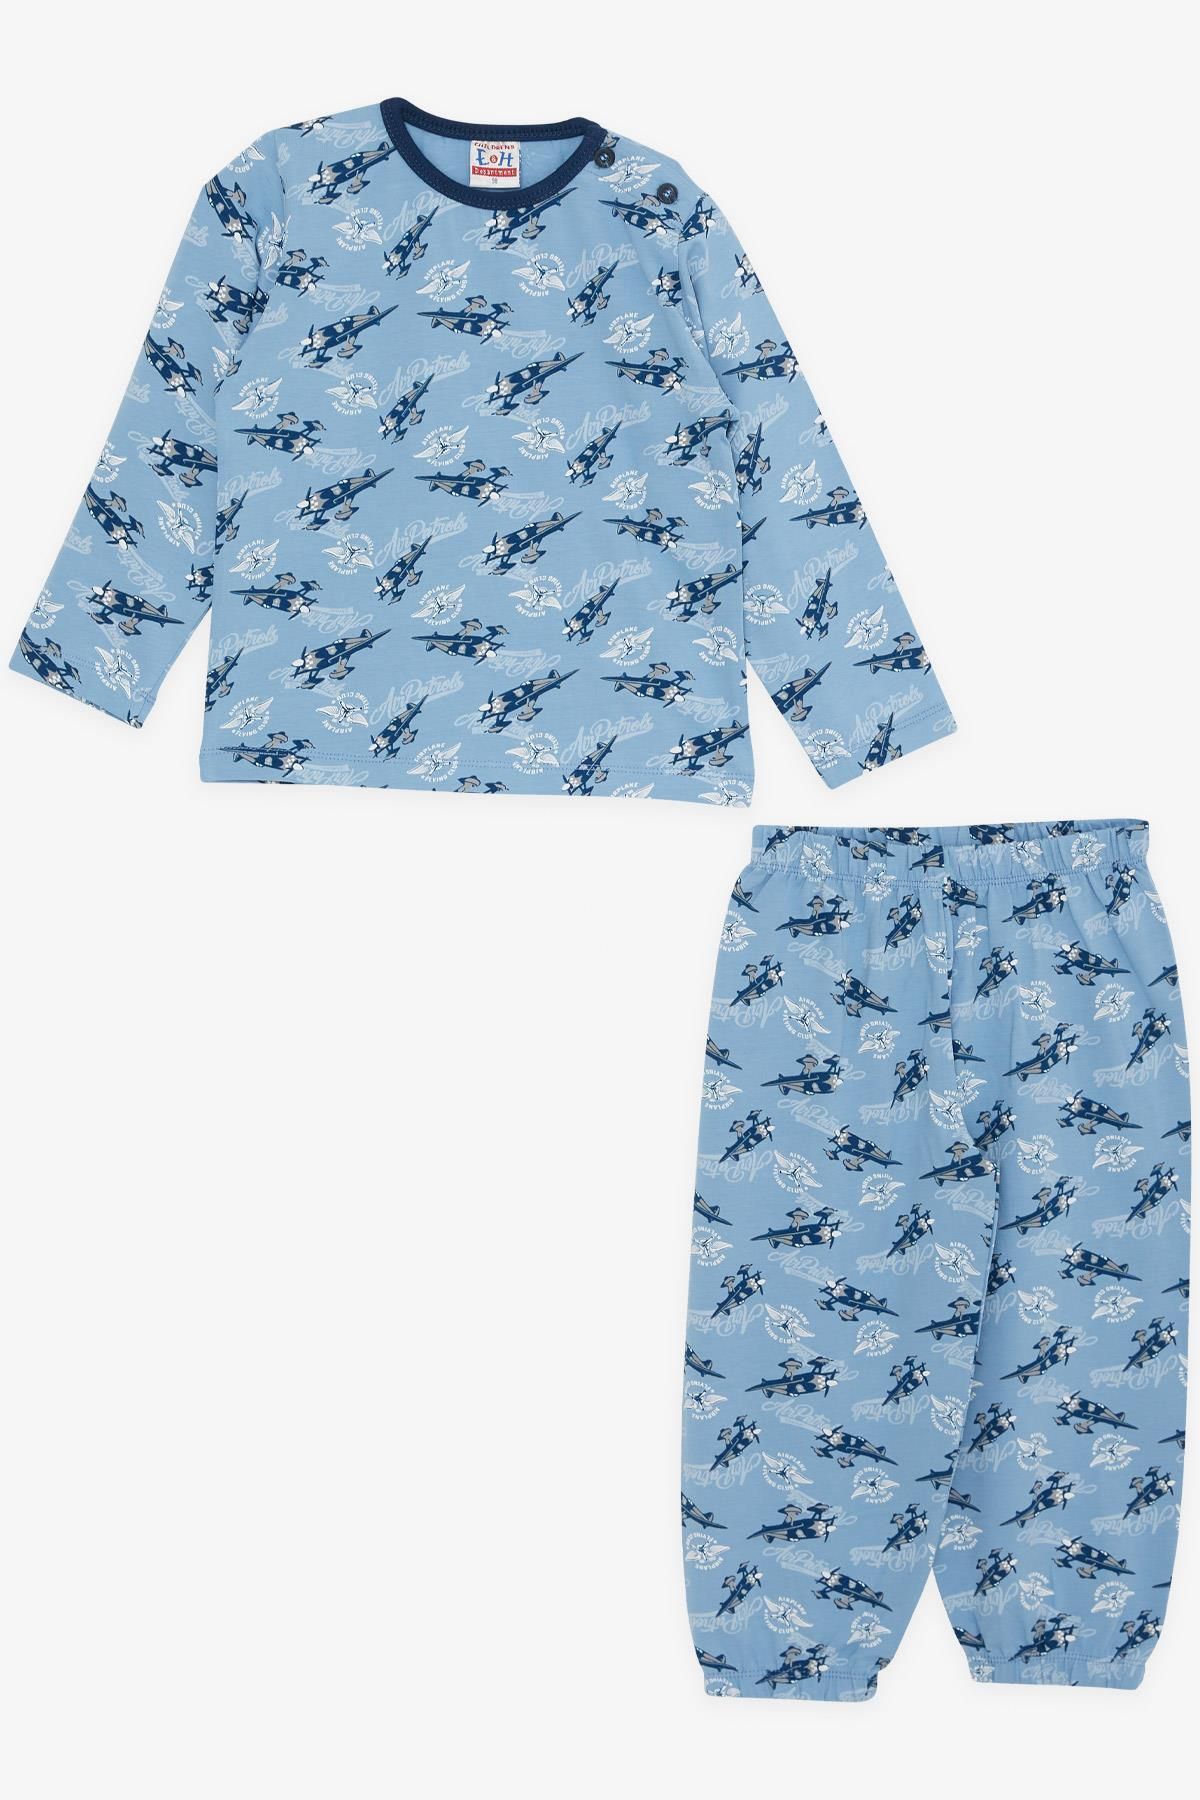 Breeze Girls & Boys Erkek Bebek Pijama Takımı Uçak Desenli 9 Ay-3 Yaş, Mavi